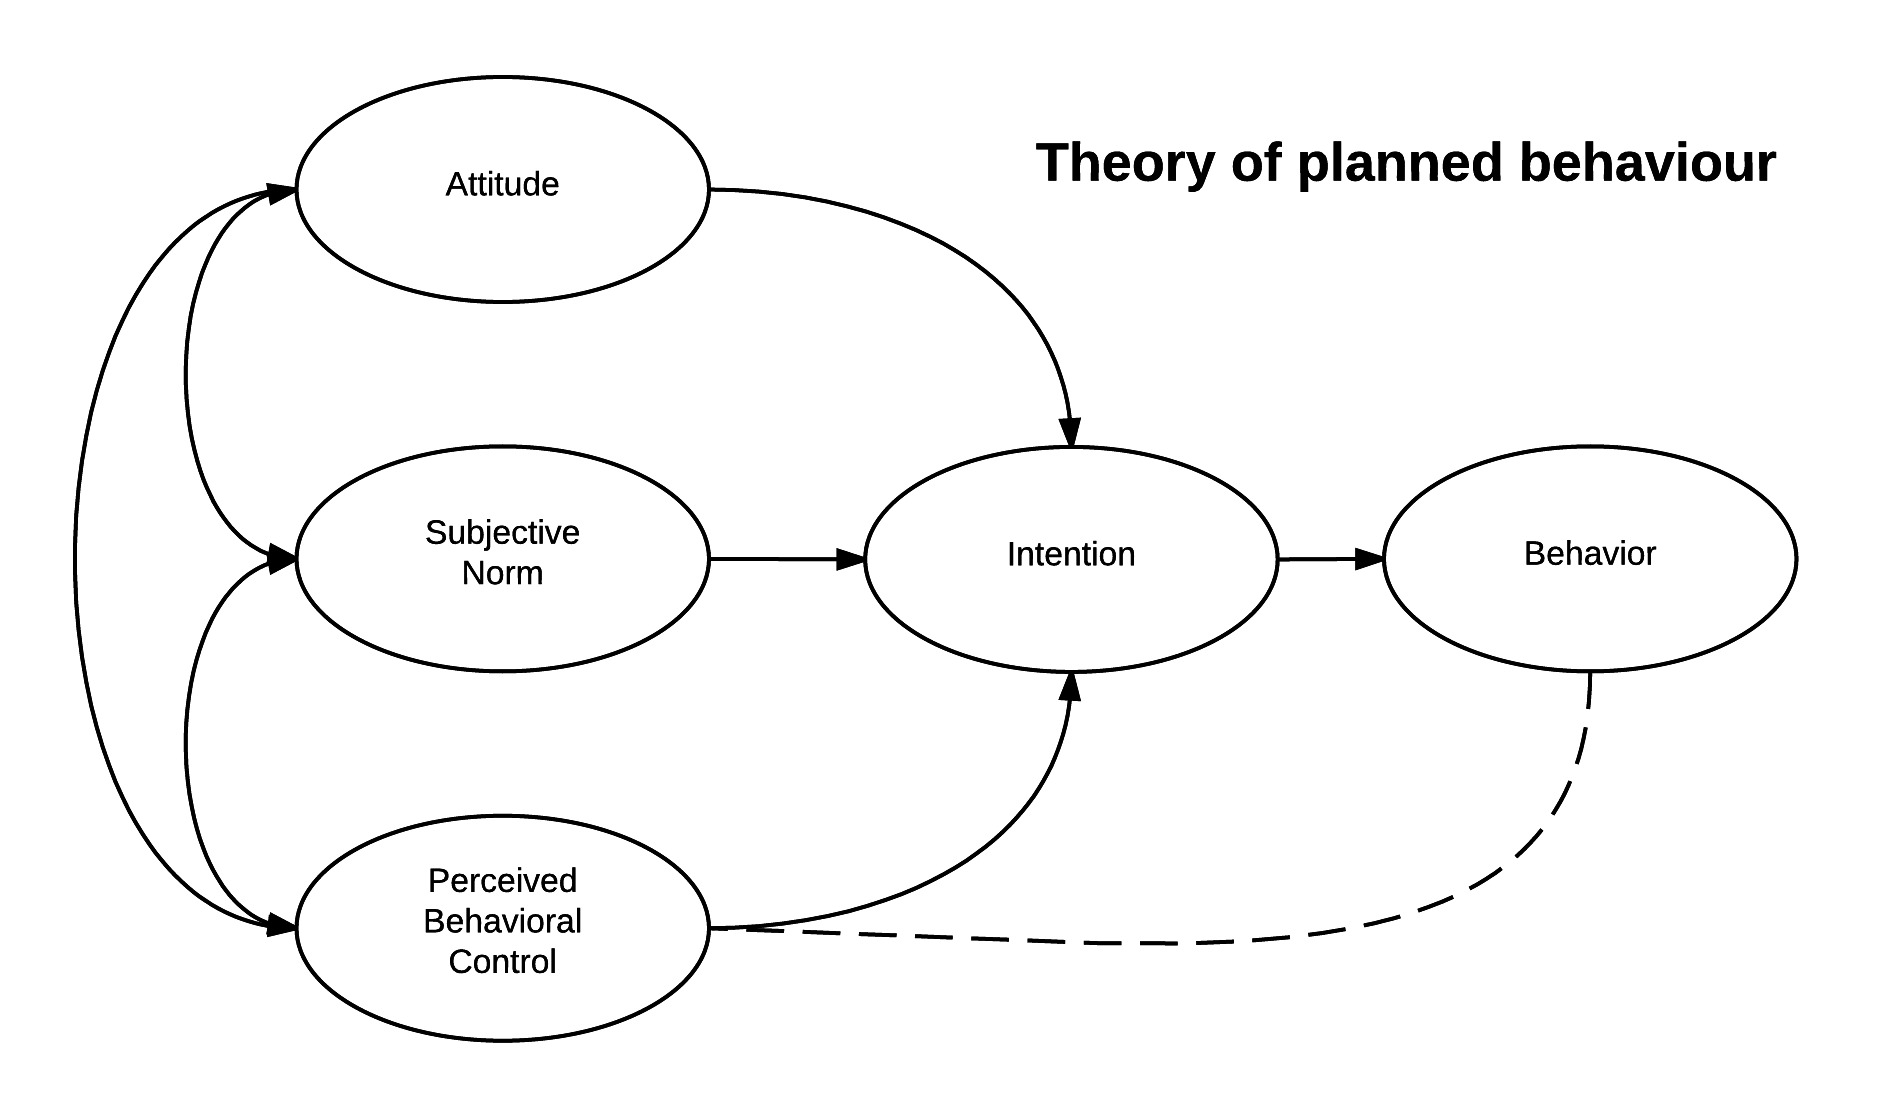 Thuyết Hành vi có Kế hoạch (Theory of planned behavior)